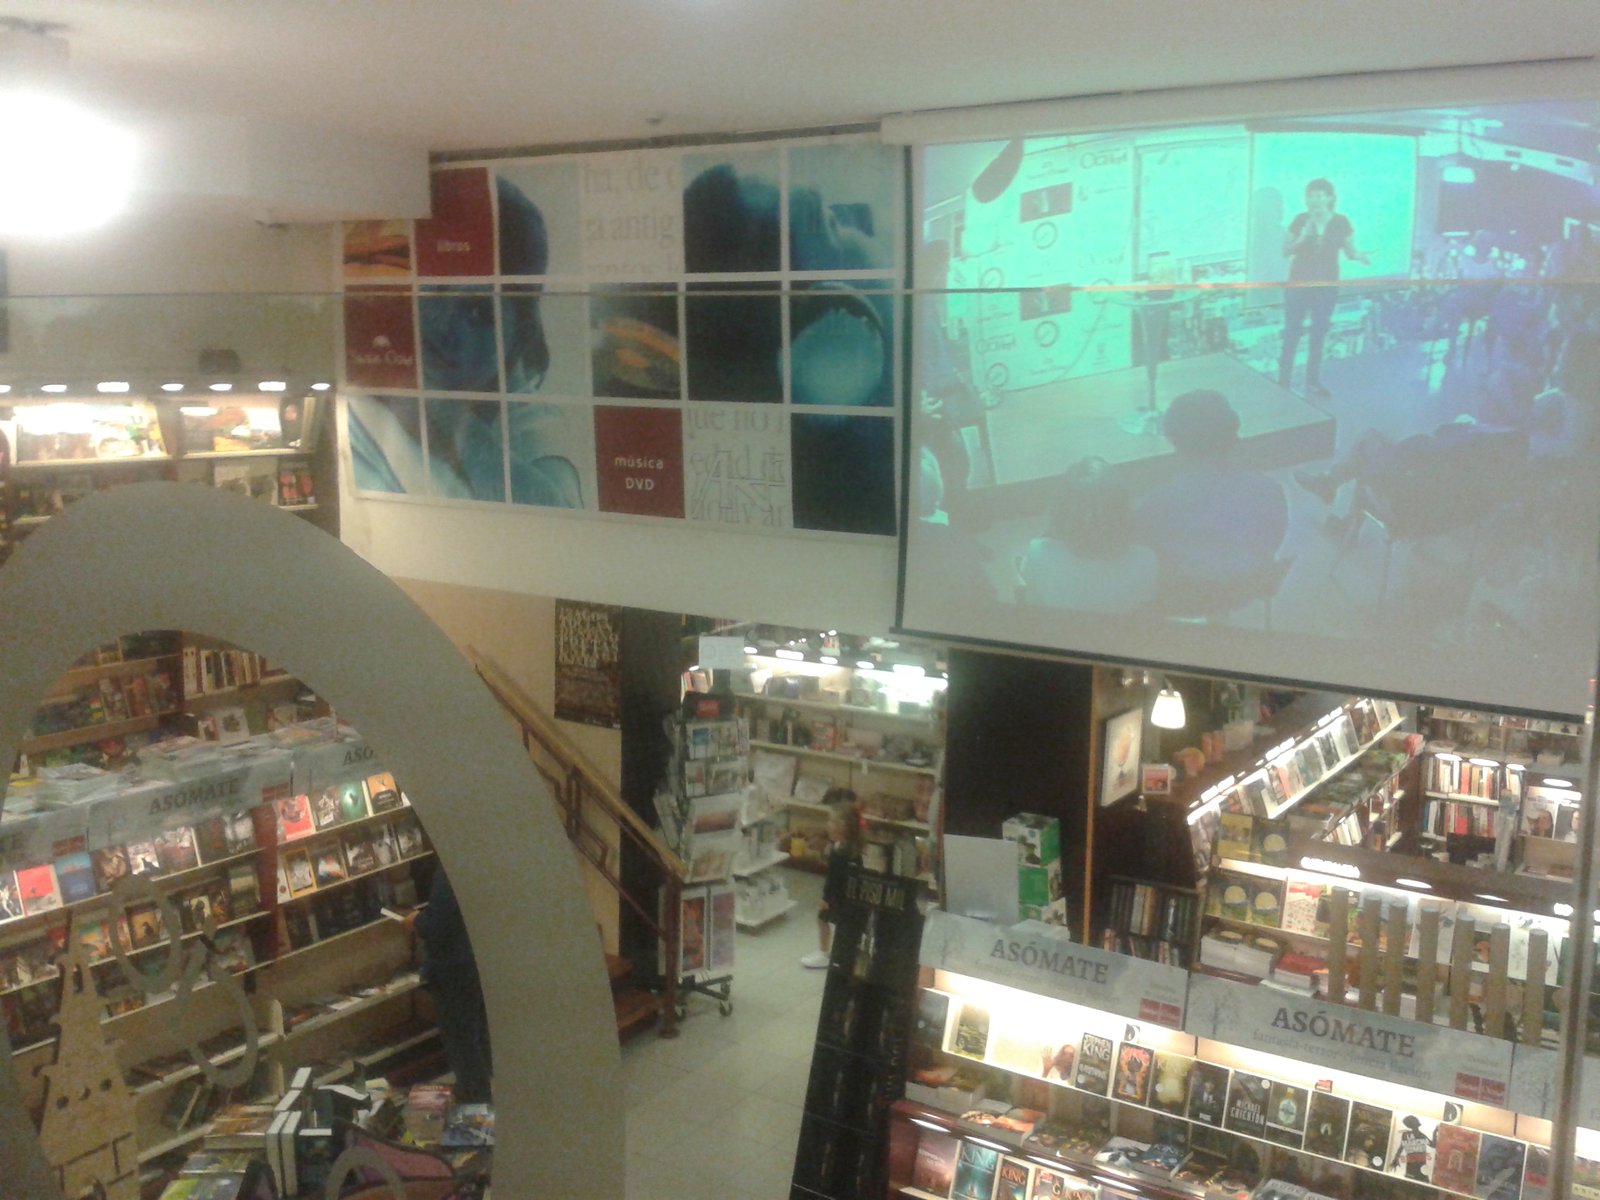 Vista del interior de la tienda desde la sala de conferencias, con la pantalla de proyecciones a través de la que se transmitía en directo el evento (fotografía de la autora).